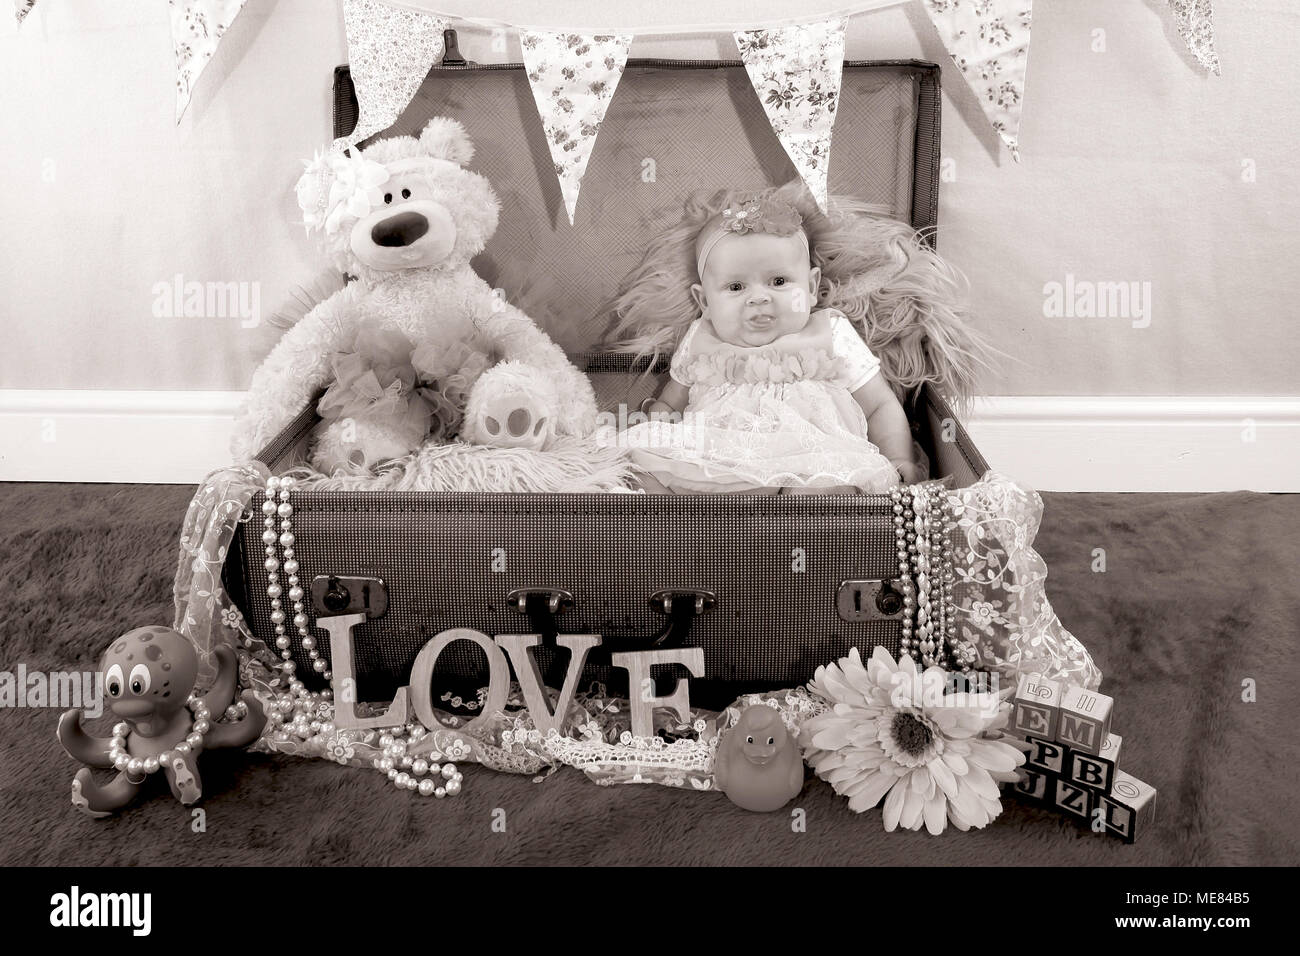 3 mese fa bambina esplorando in vivaio, lo sviluppo cognitivo, in una valigia vintage Foto Stock